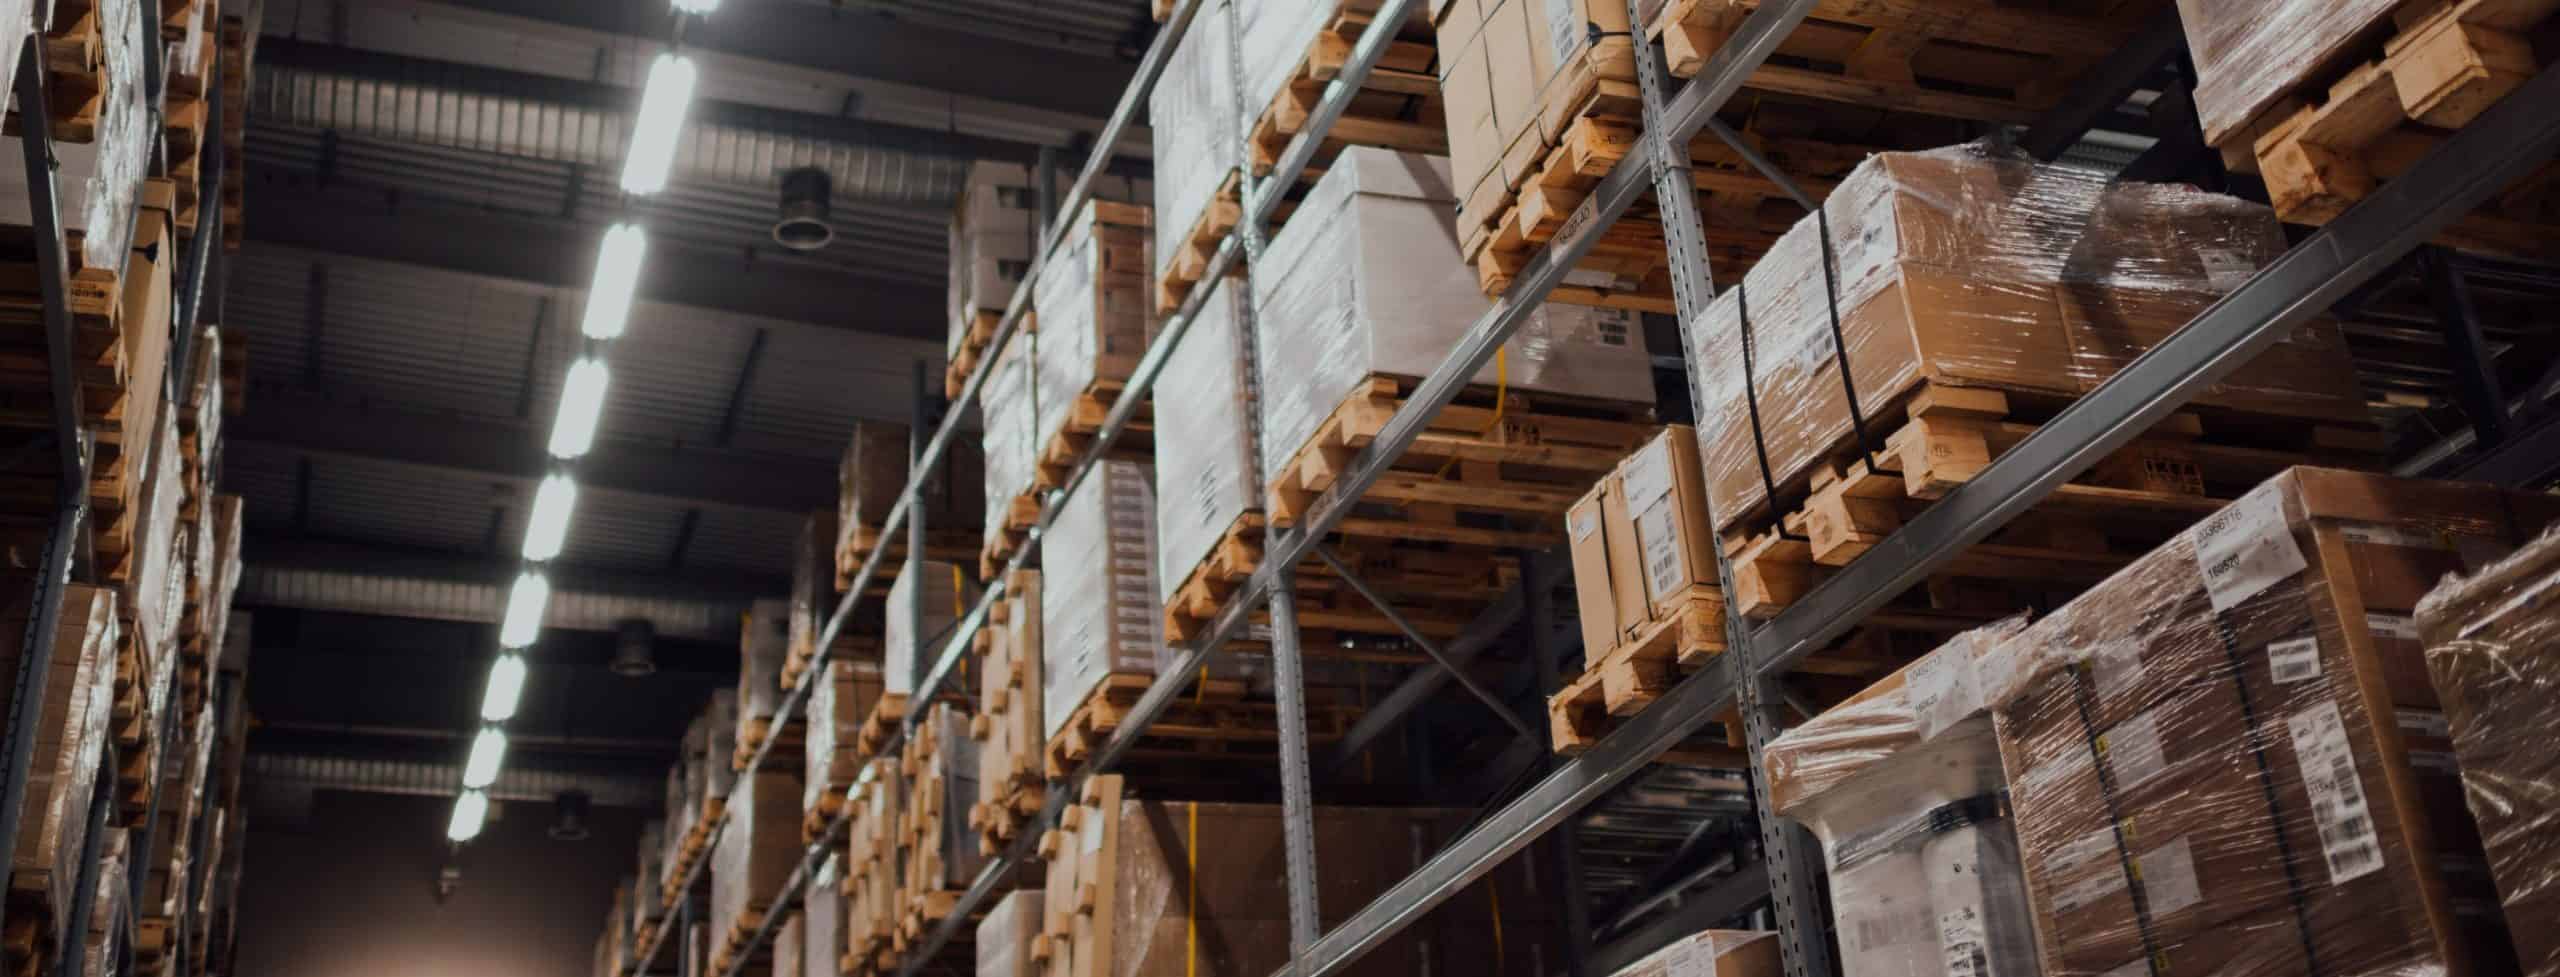 Warehouse pallet racks